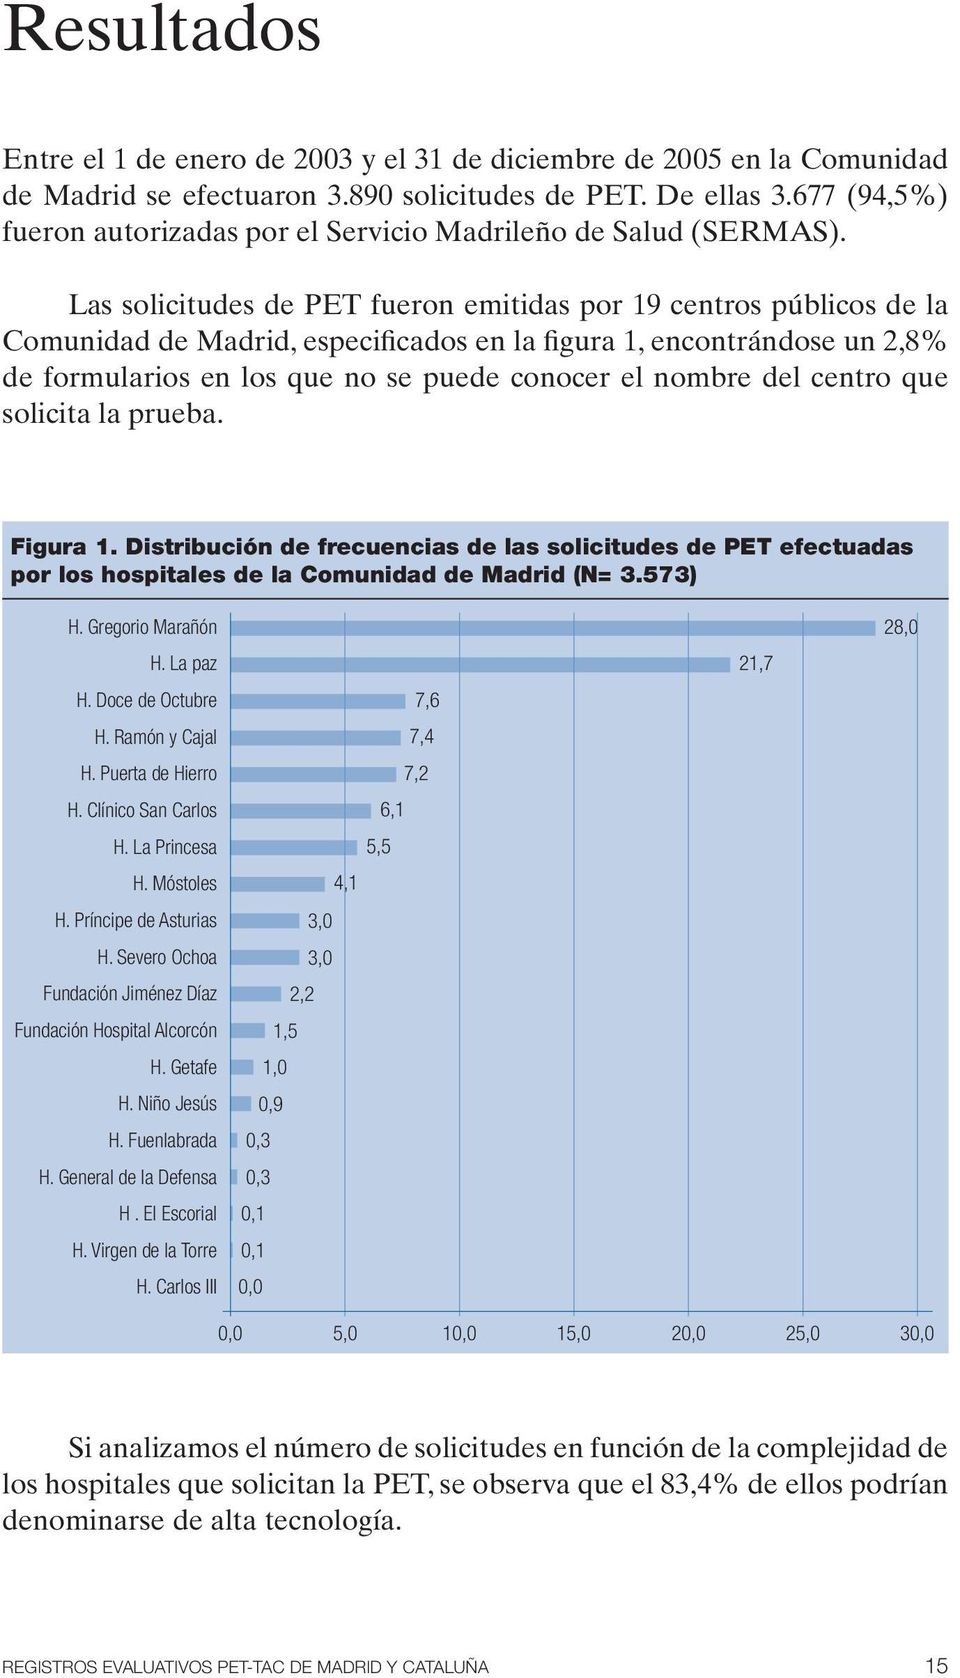 Las solicitudes de PET fueron emitidas por 19 centros públicos de la Comunidad de Madrid, especificados en la figura 1, encontrándose un 2,8% de formularios en los que no se puede conocer el nombre